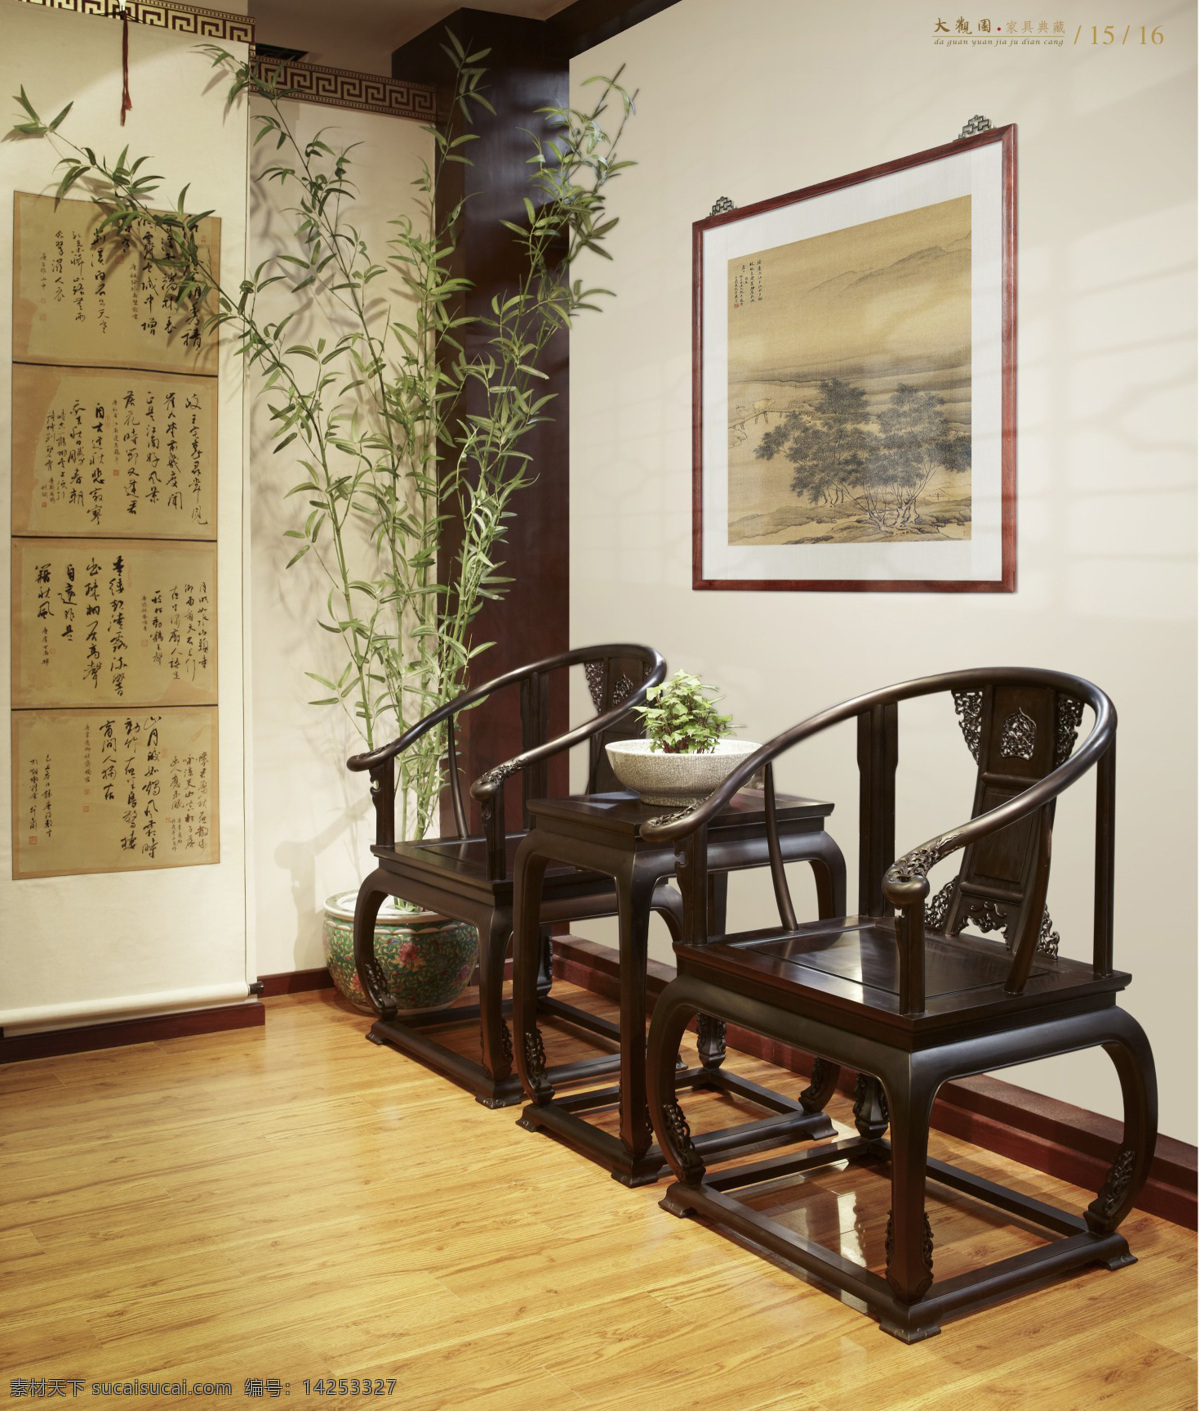 家具 环境设计 墙画 室内设计 椅子 竹子 木椅 家居装饰素材